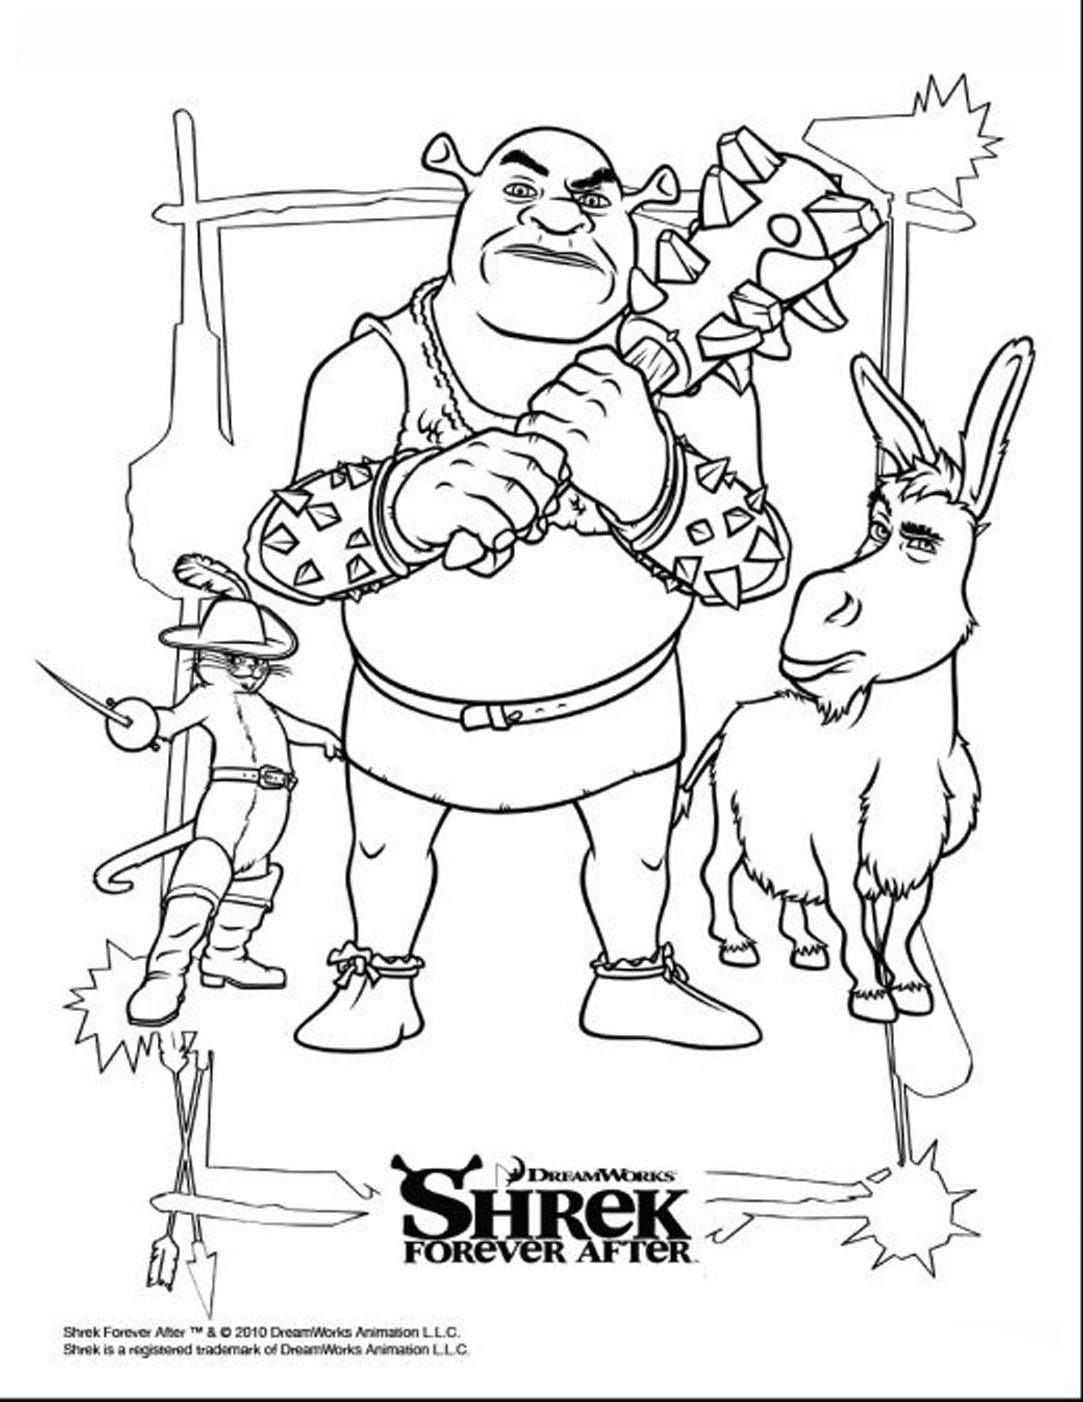 Colroiage gratuit de Shrek 4, avec l'ogre, l'âne et le chat potté